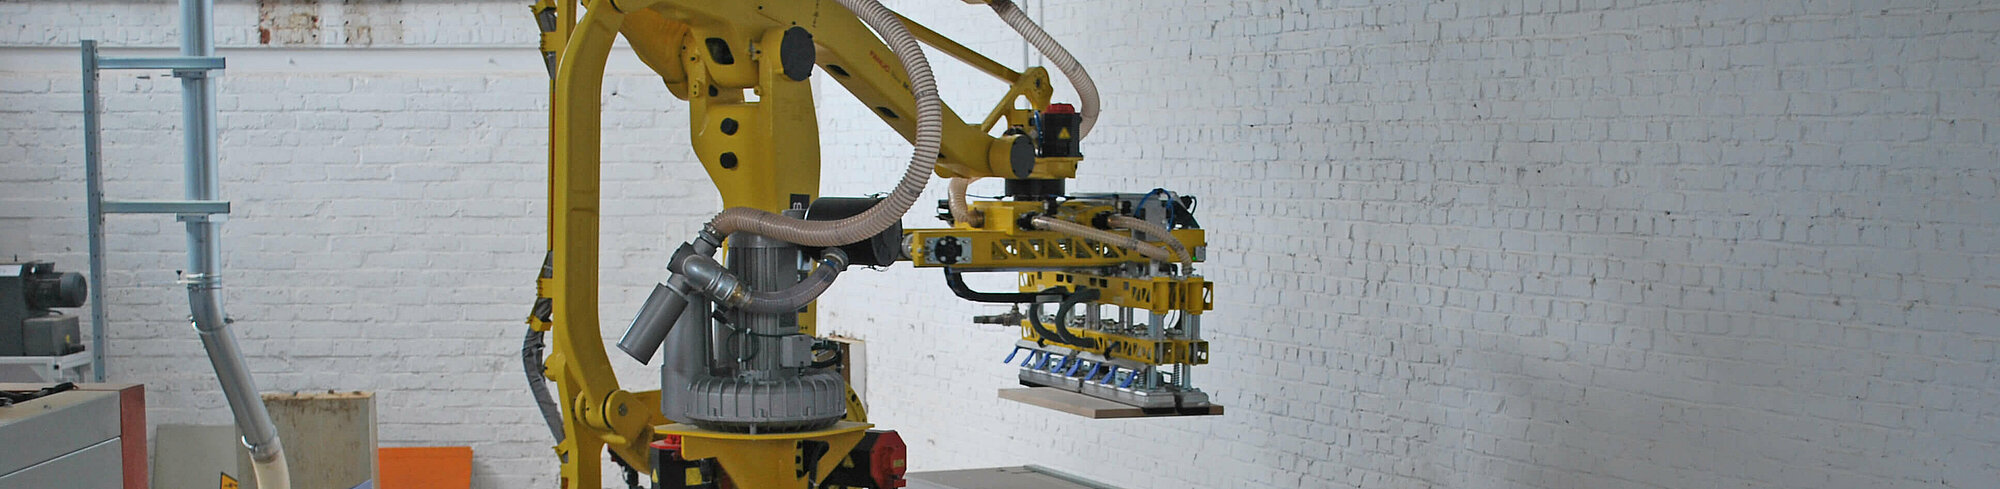 Der belgische Treppenbauer Trappen Verschaeve setzt Roboter zur Produktivitätssteigerung ein